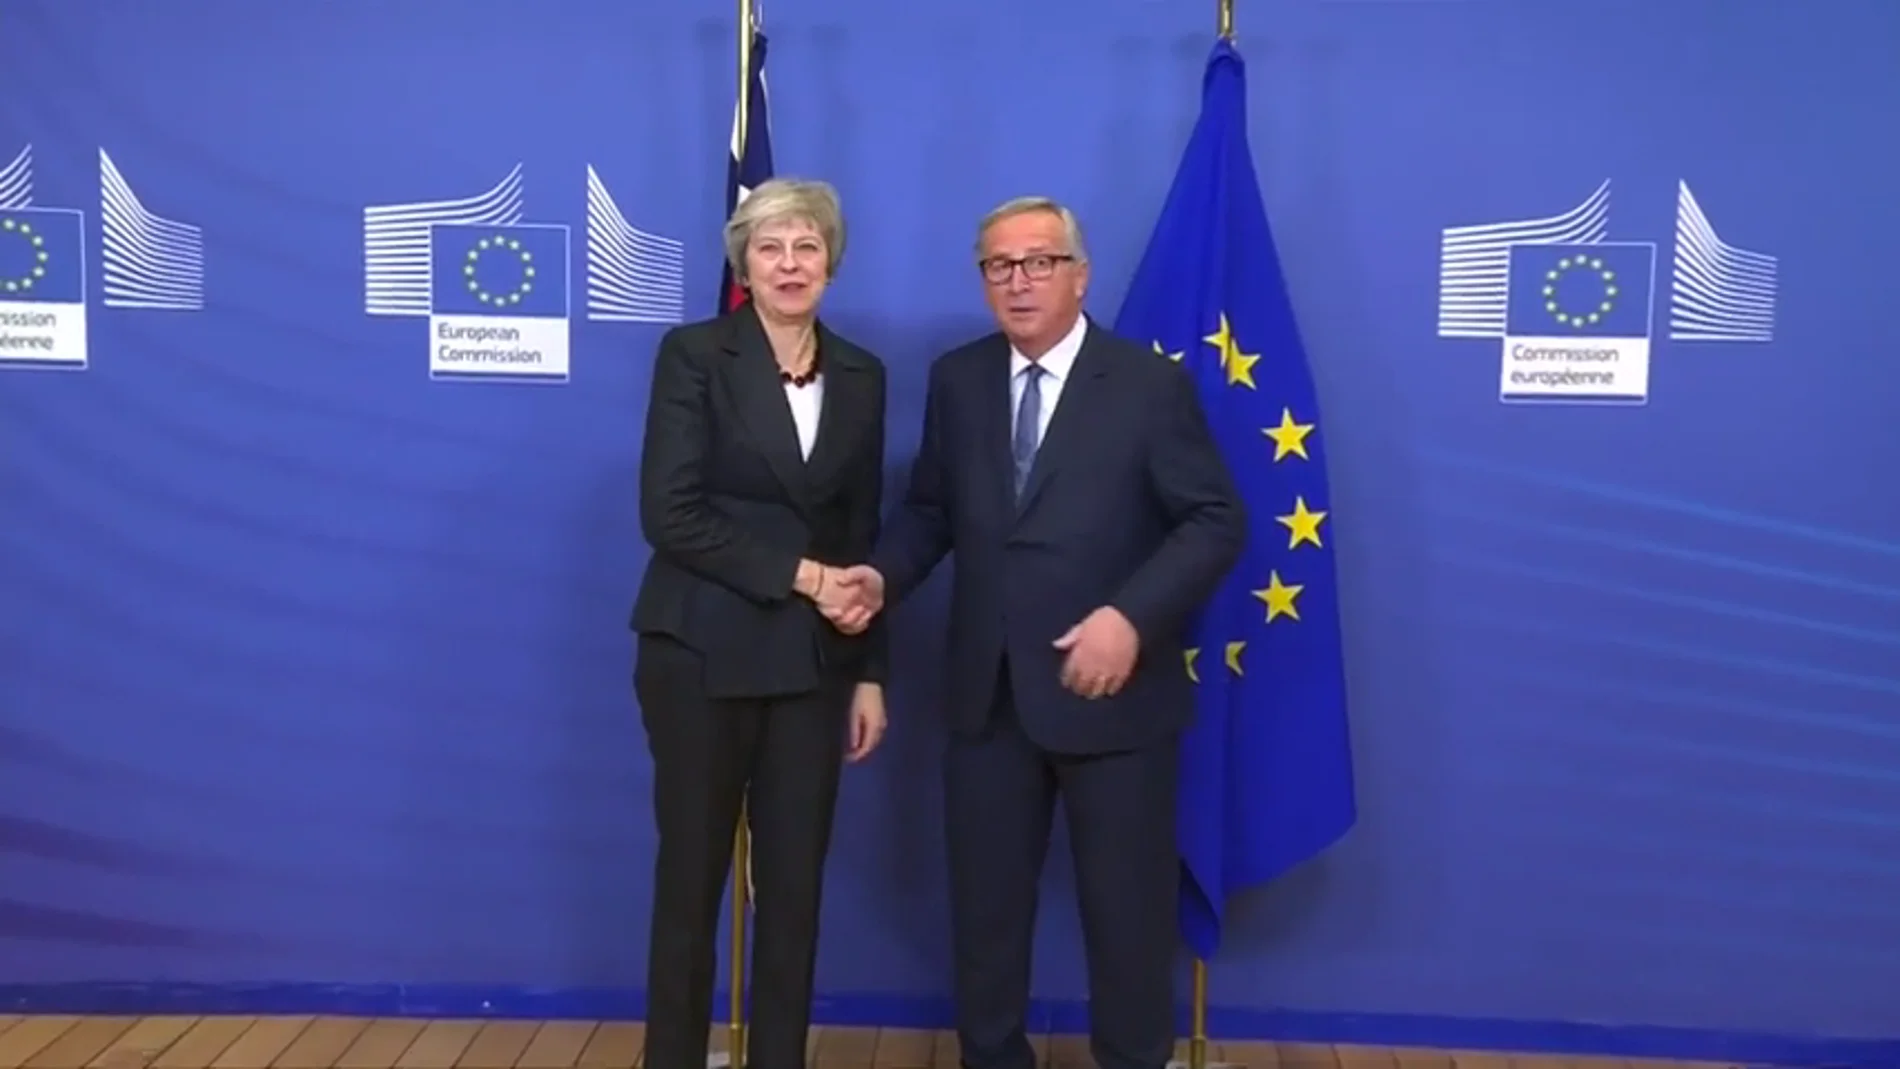 Theresa May se reúne con Jean-Claude Juncker en la Comisión Europea